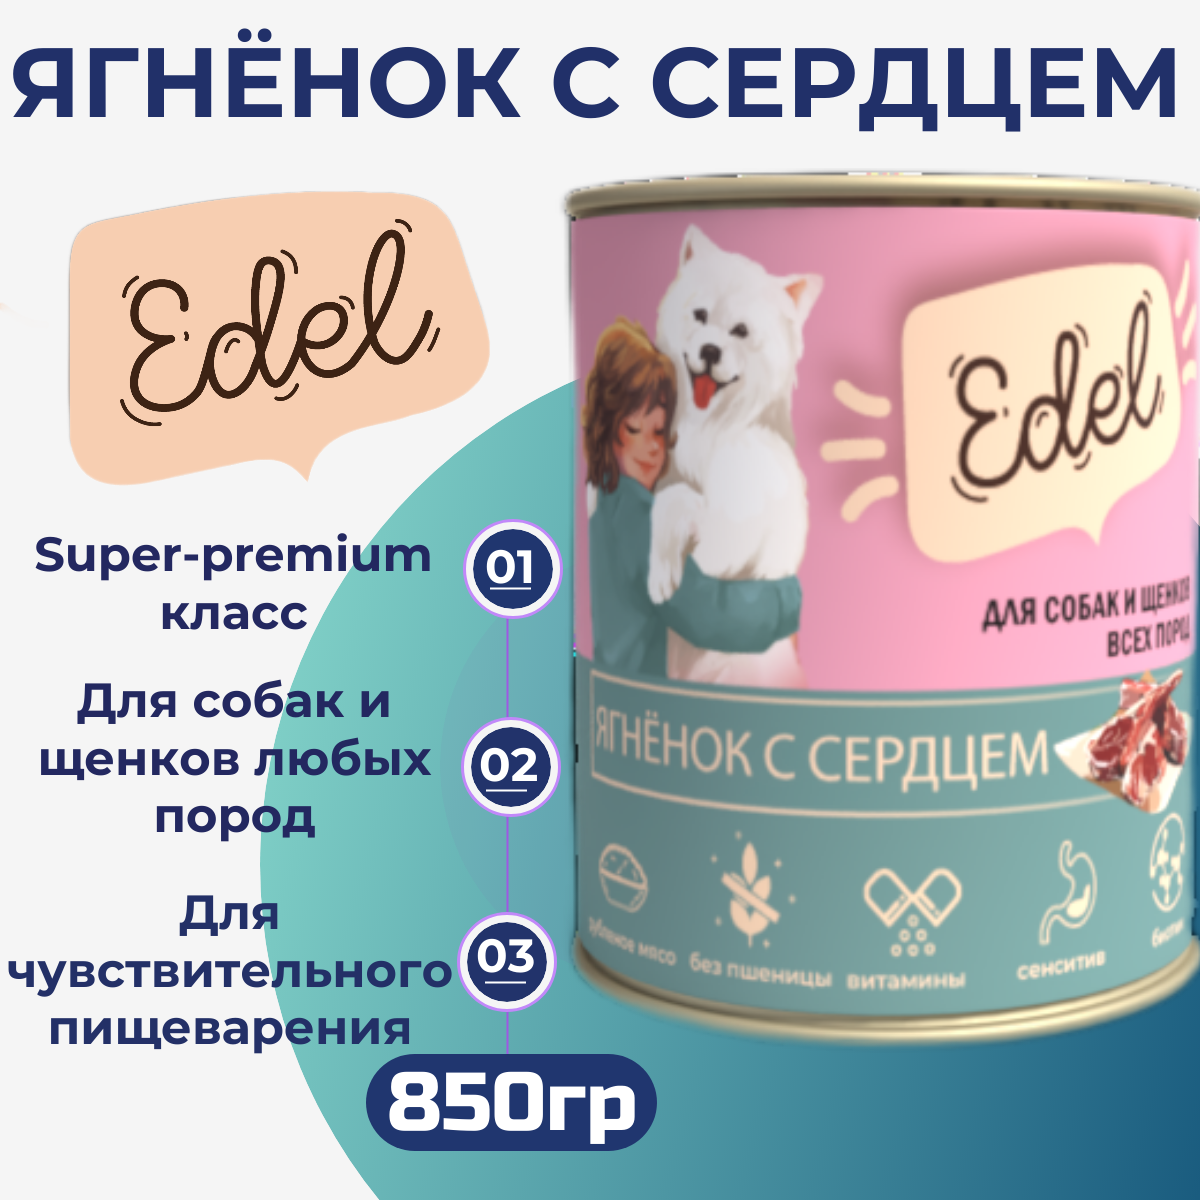 Консервы для собак Edel (Ягненок с сердцем) 850 гр. по 6 шт.